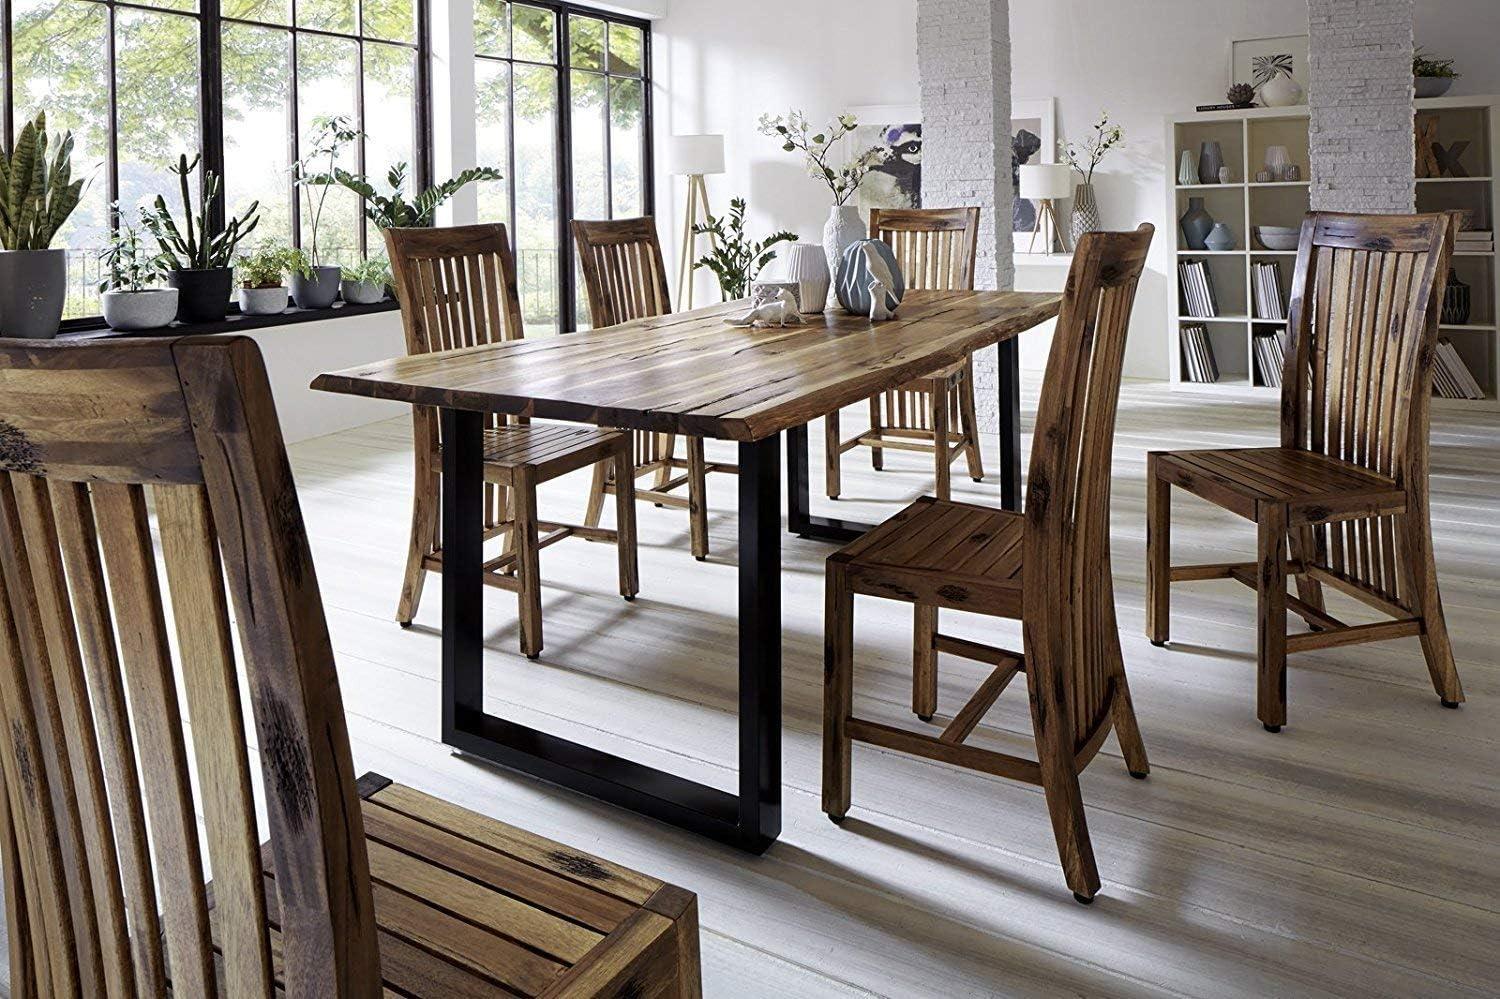 SAM® Stilvoller Esszimmertisch Imker aus Akazie-Holz, Baumkantentisch mit lackierten Beinen aus Roheisen, naturbelassene Optik mit Einer Baumkanten-Tischplatte, 160 x 90 cm Bild 1